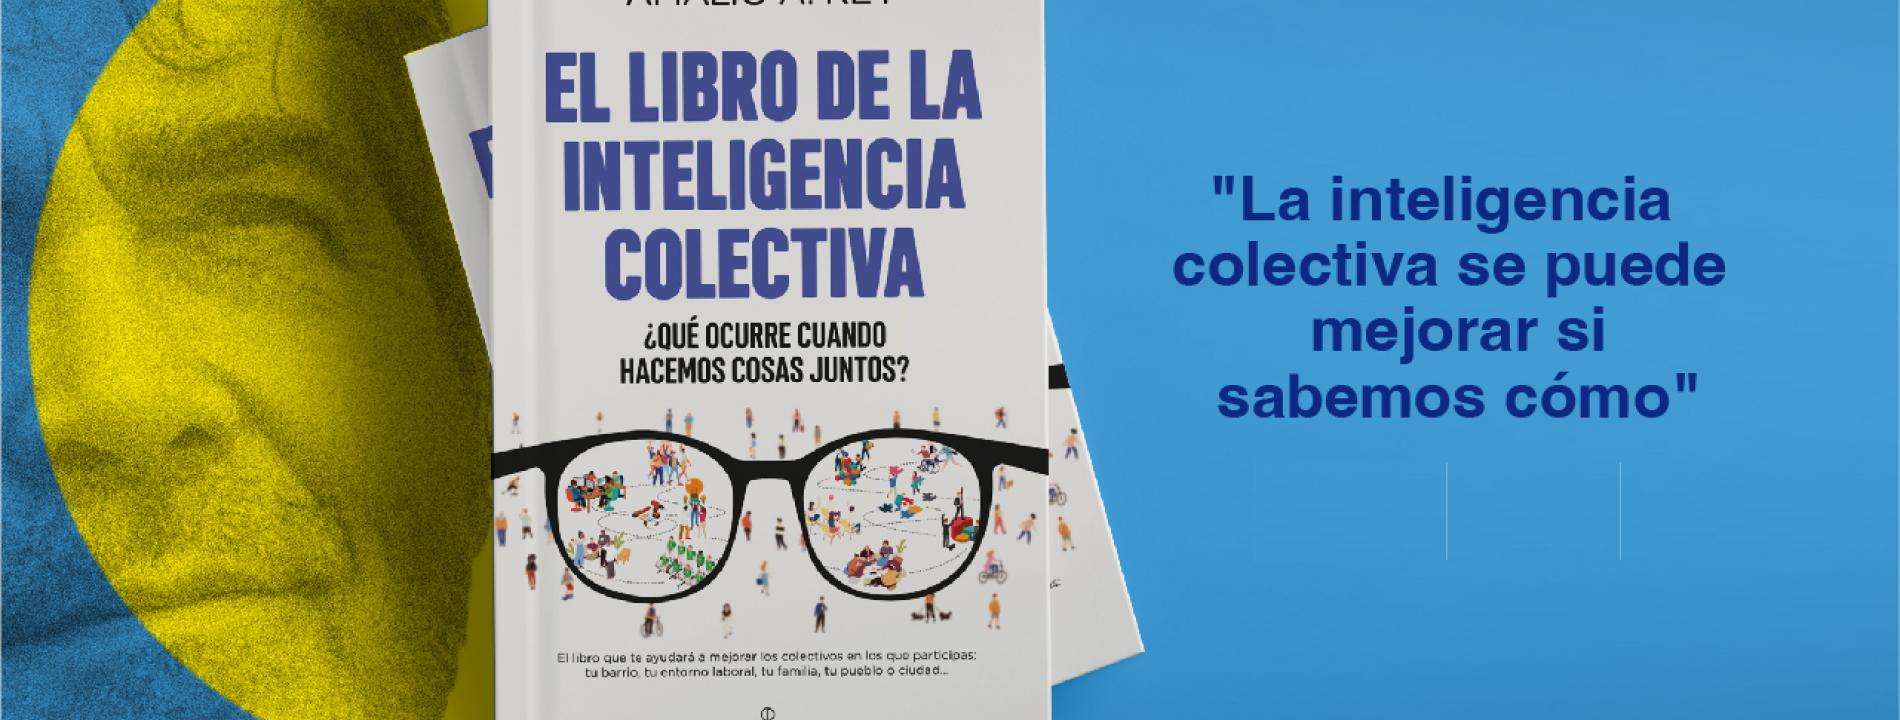 Encuentro-taller con Amalio Rey sobre Inteligencia Colectiva